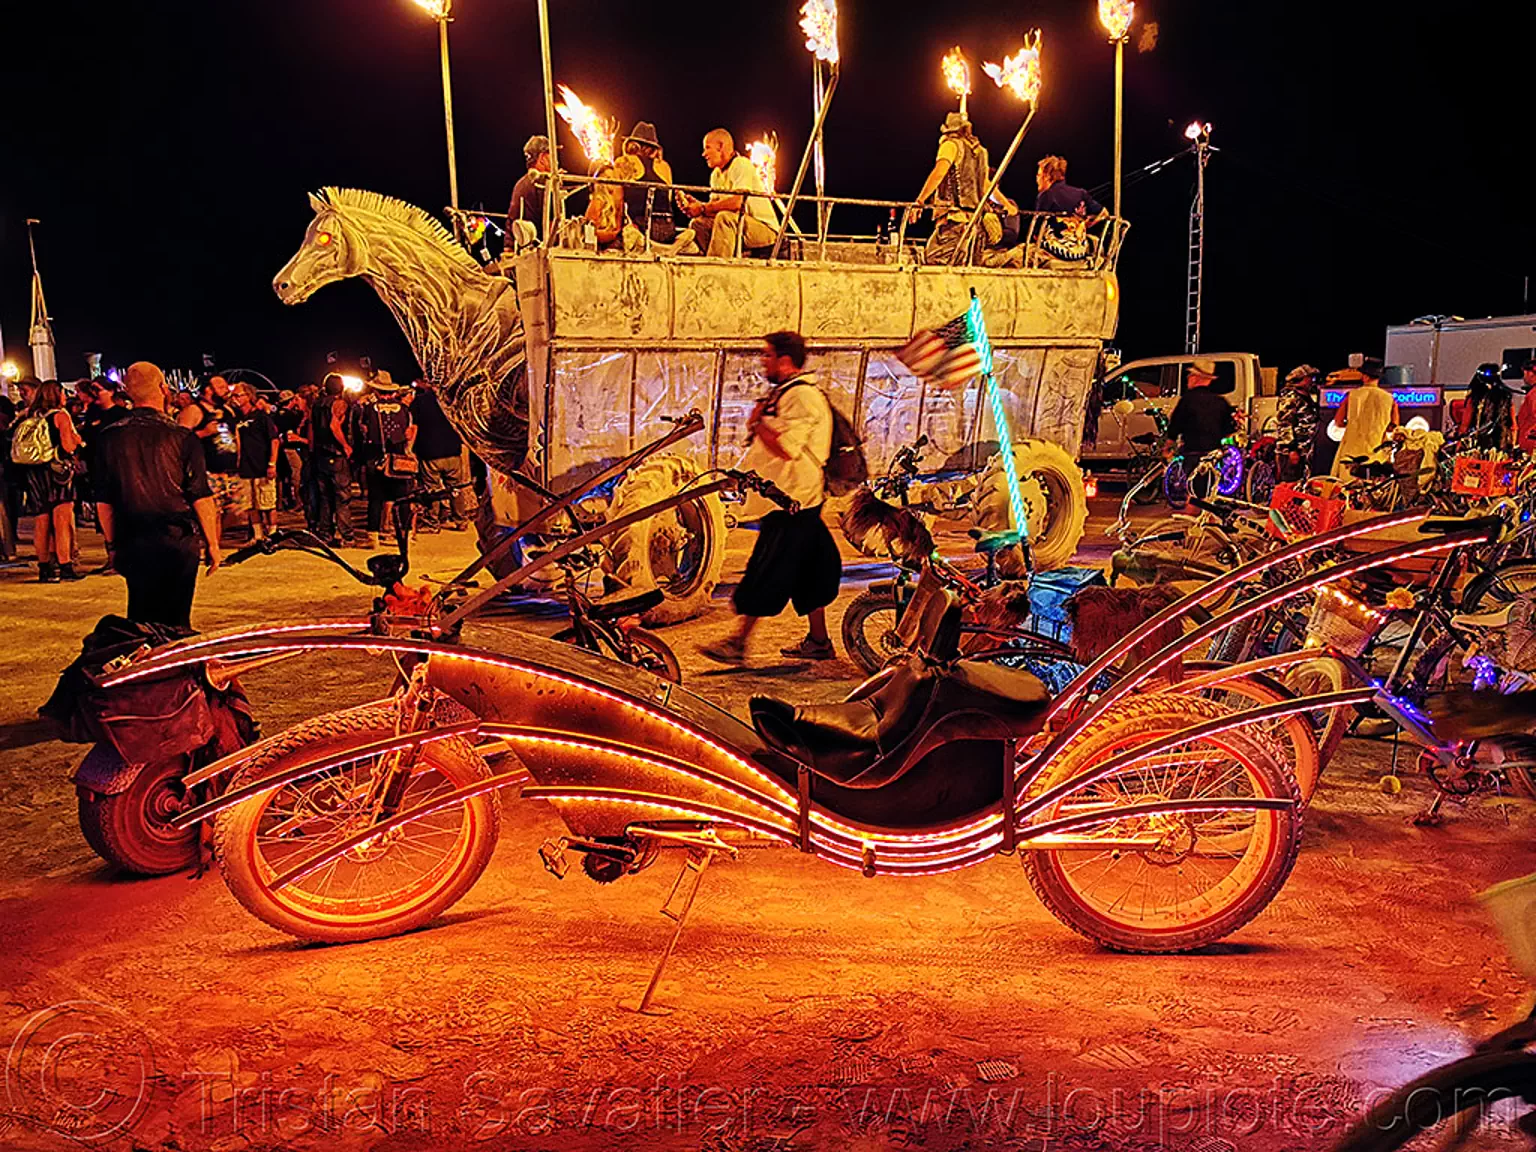 glowing cruiser bicycle - burning man 2019, art car, bicycle, bike, burning man, cruiser, mutant vehicles, night